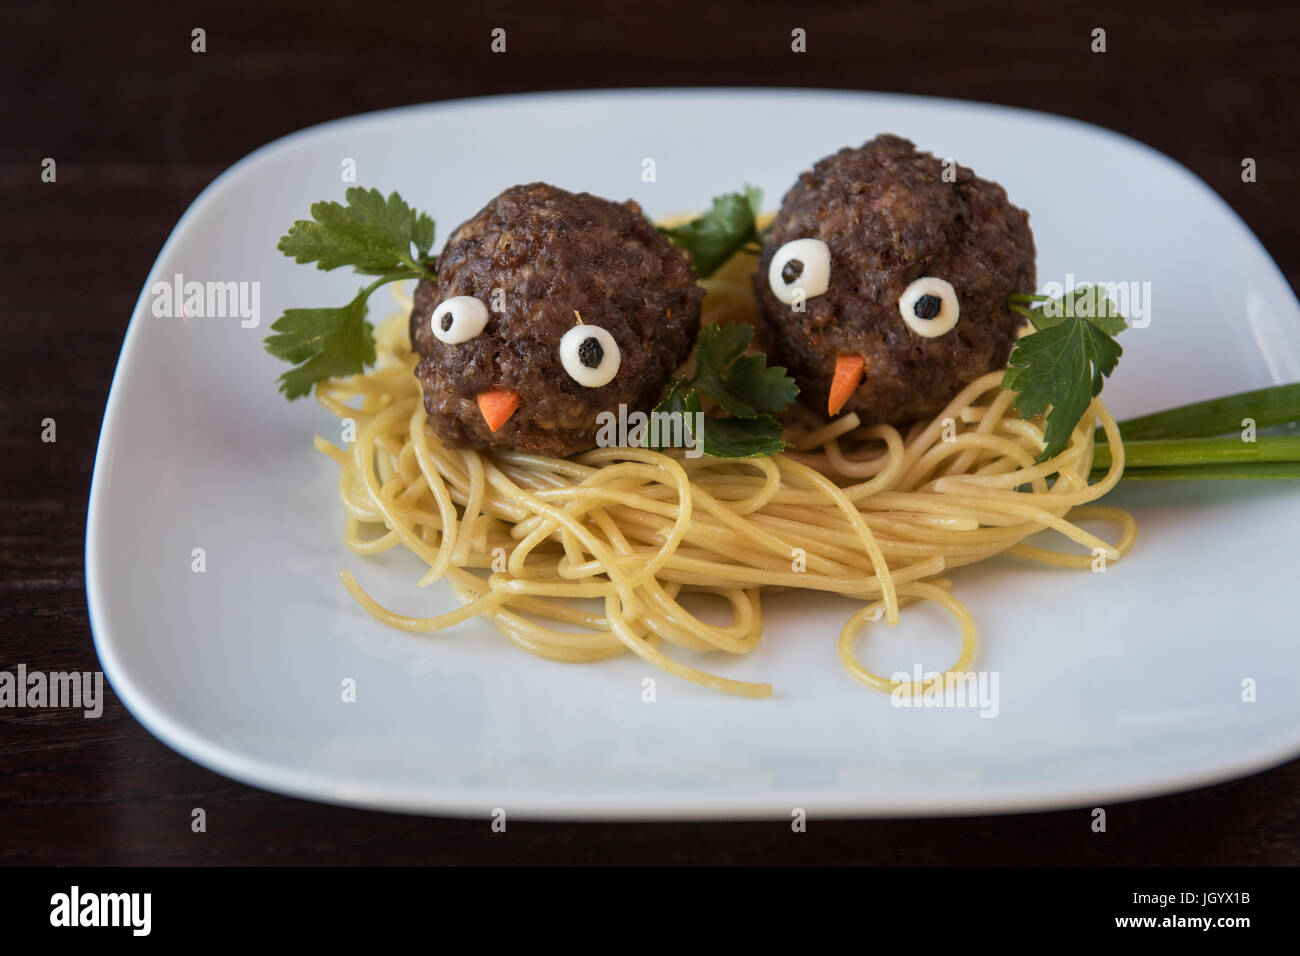 Lustige Hackfleischbällchen mit Nudeln Stockfotografie - Alamy